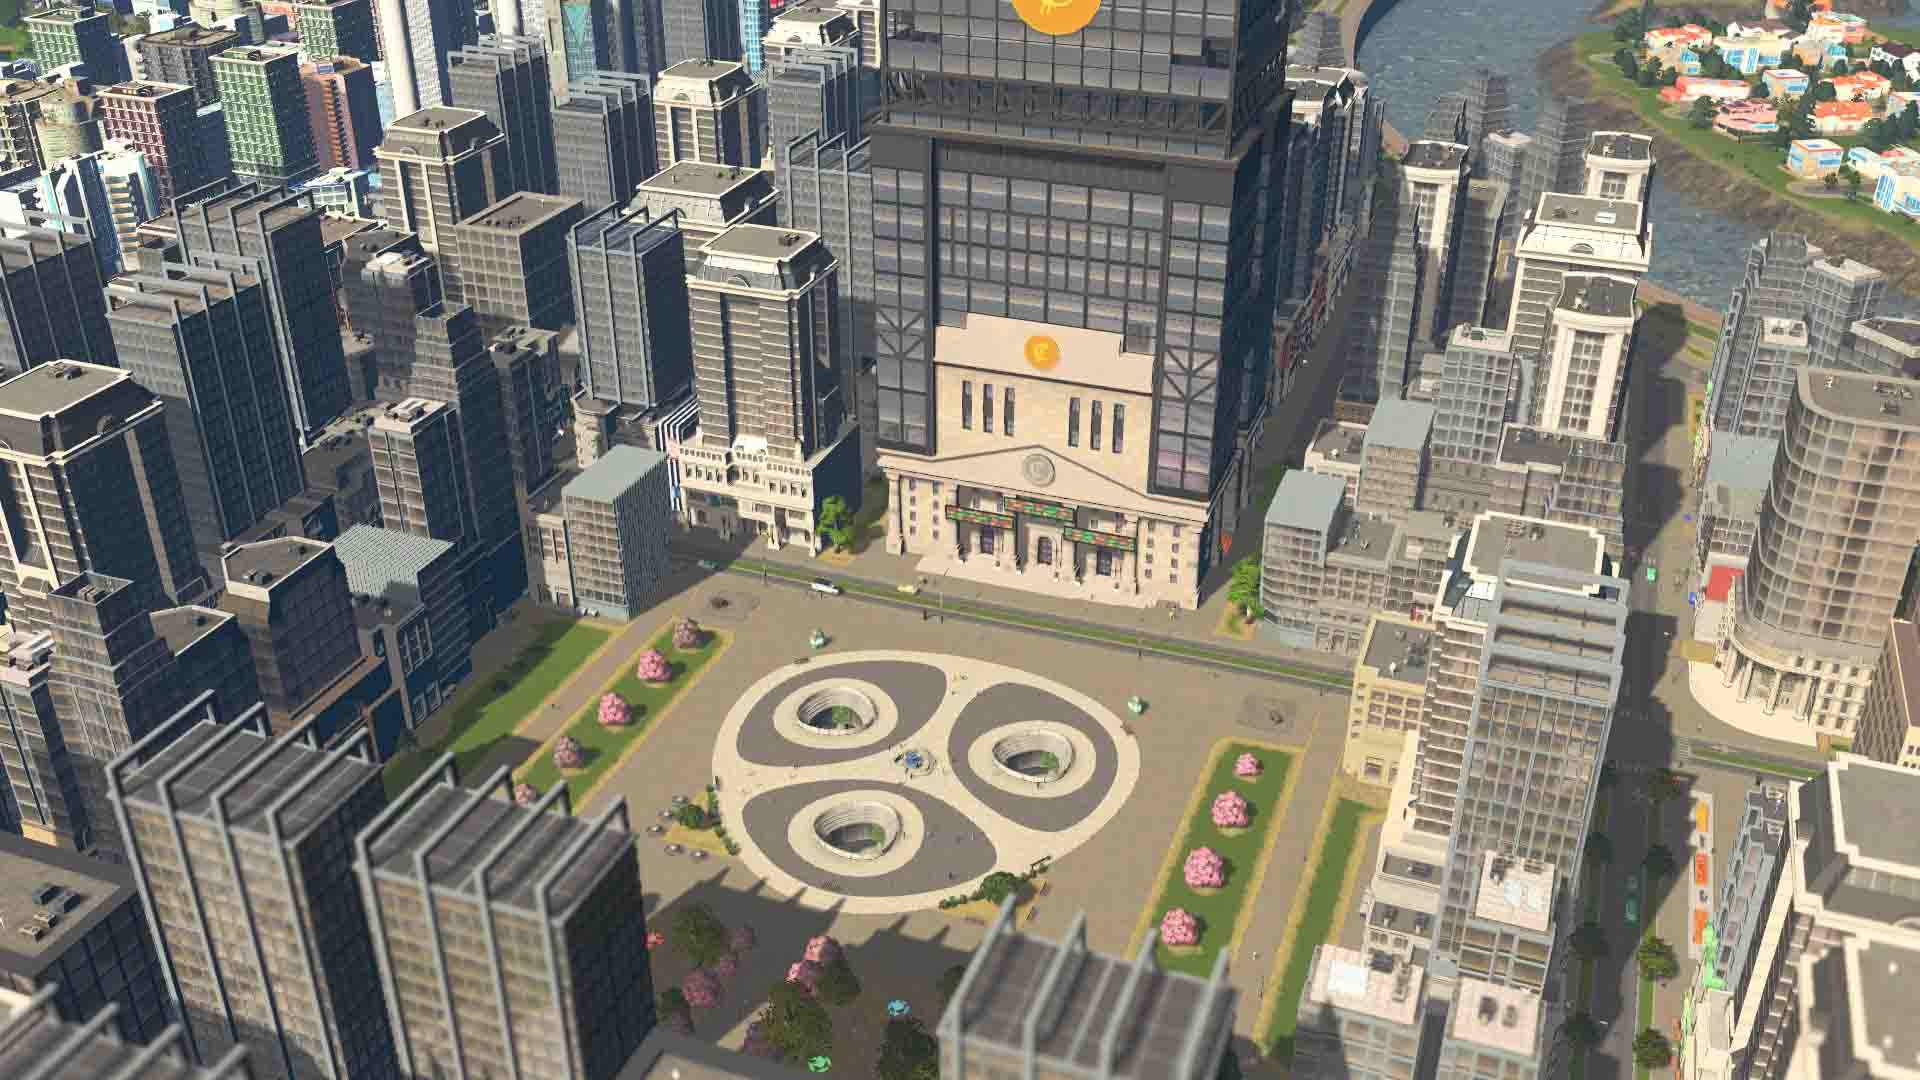 Cities: Skylines para PC (2015)